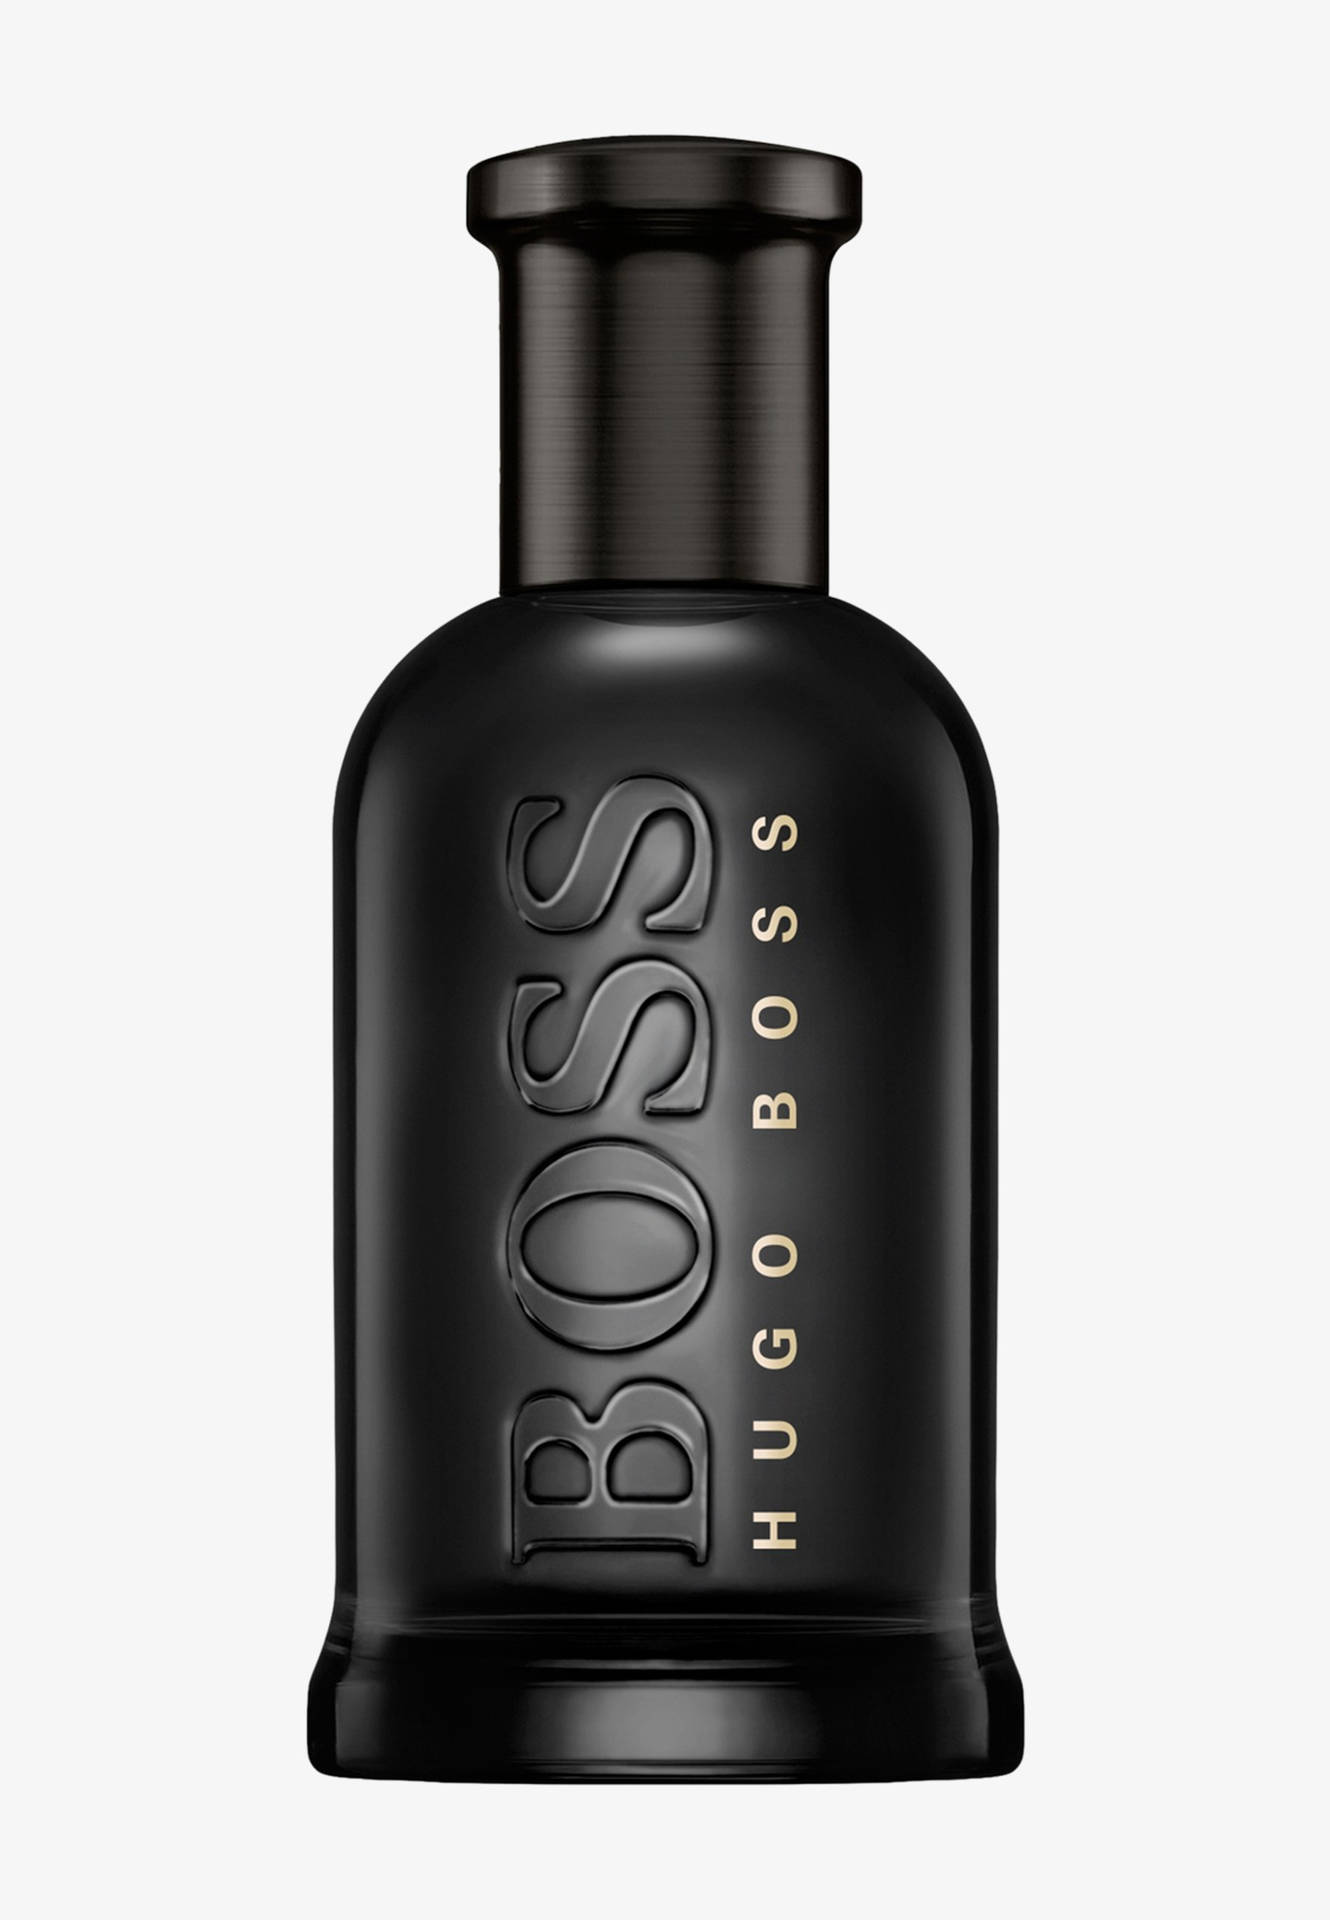 Black Hugo Boss Perfume Bottle Wallpaper